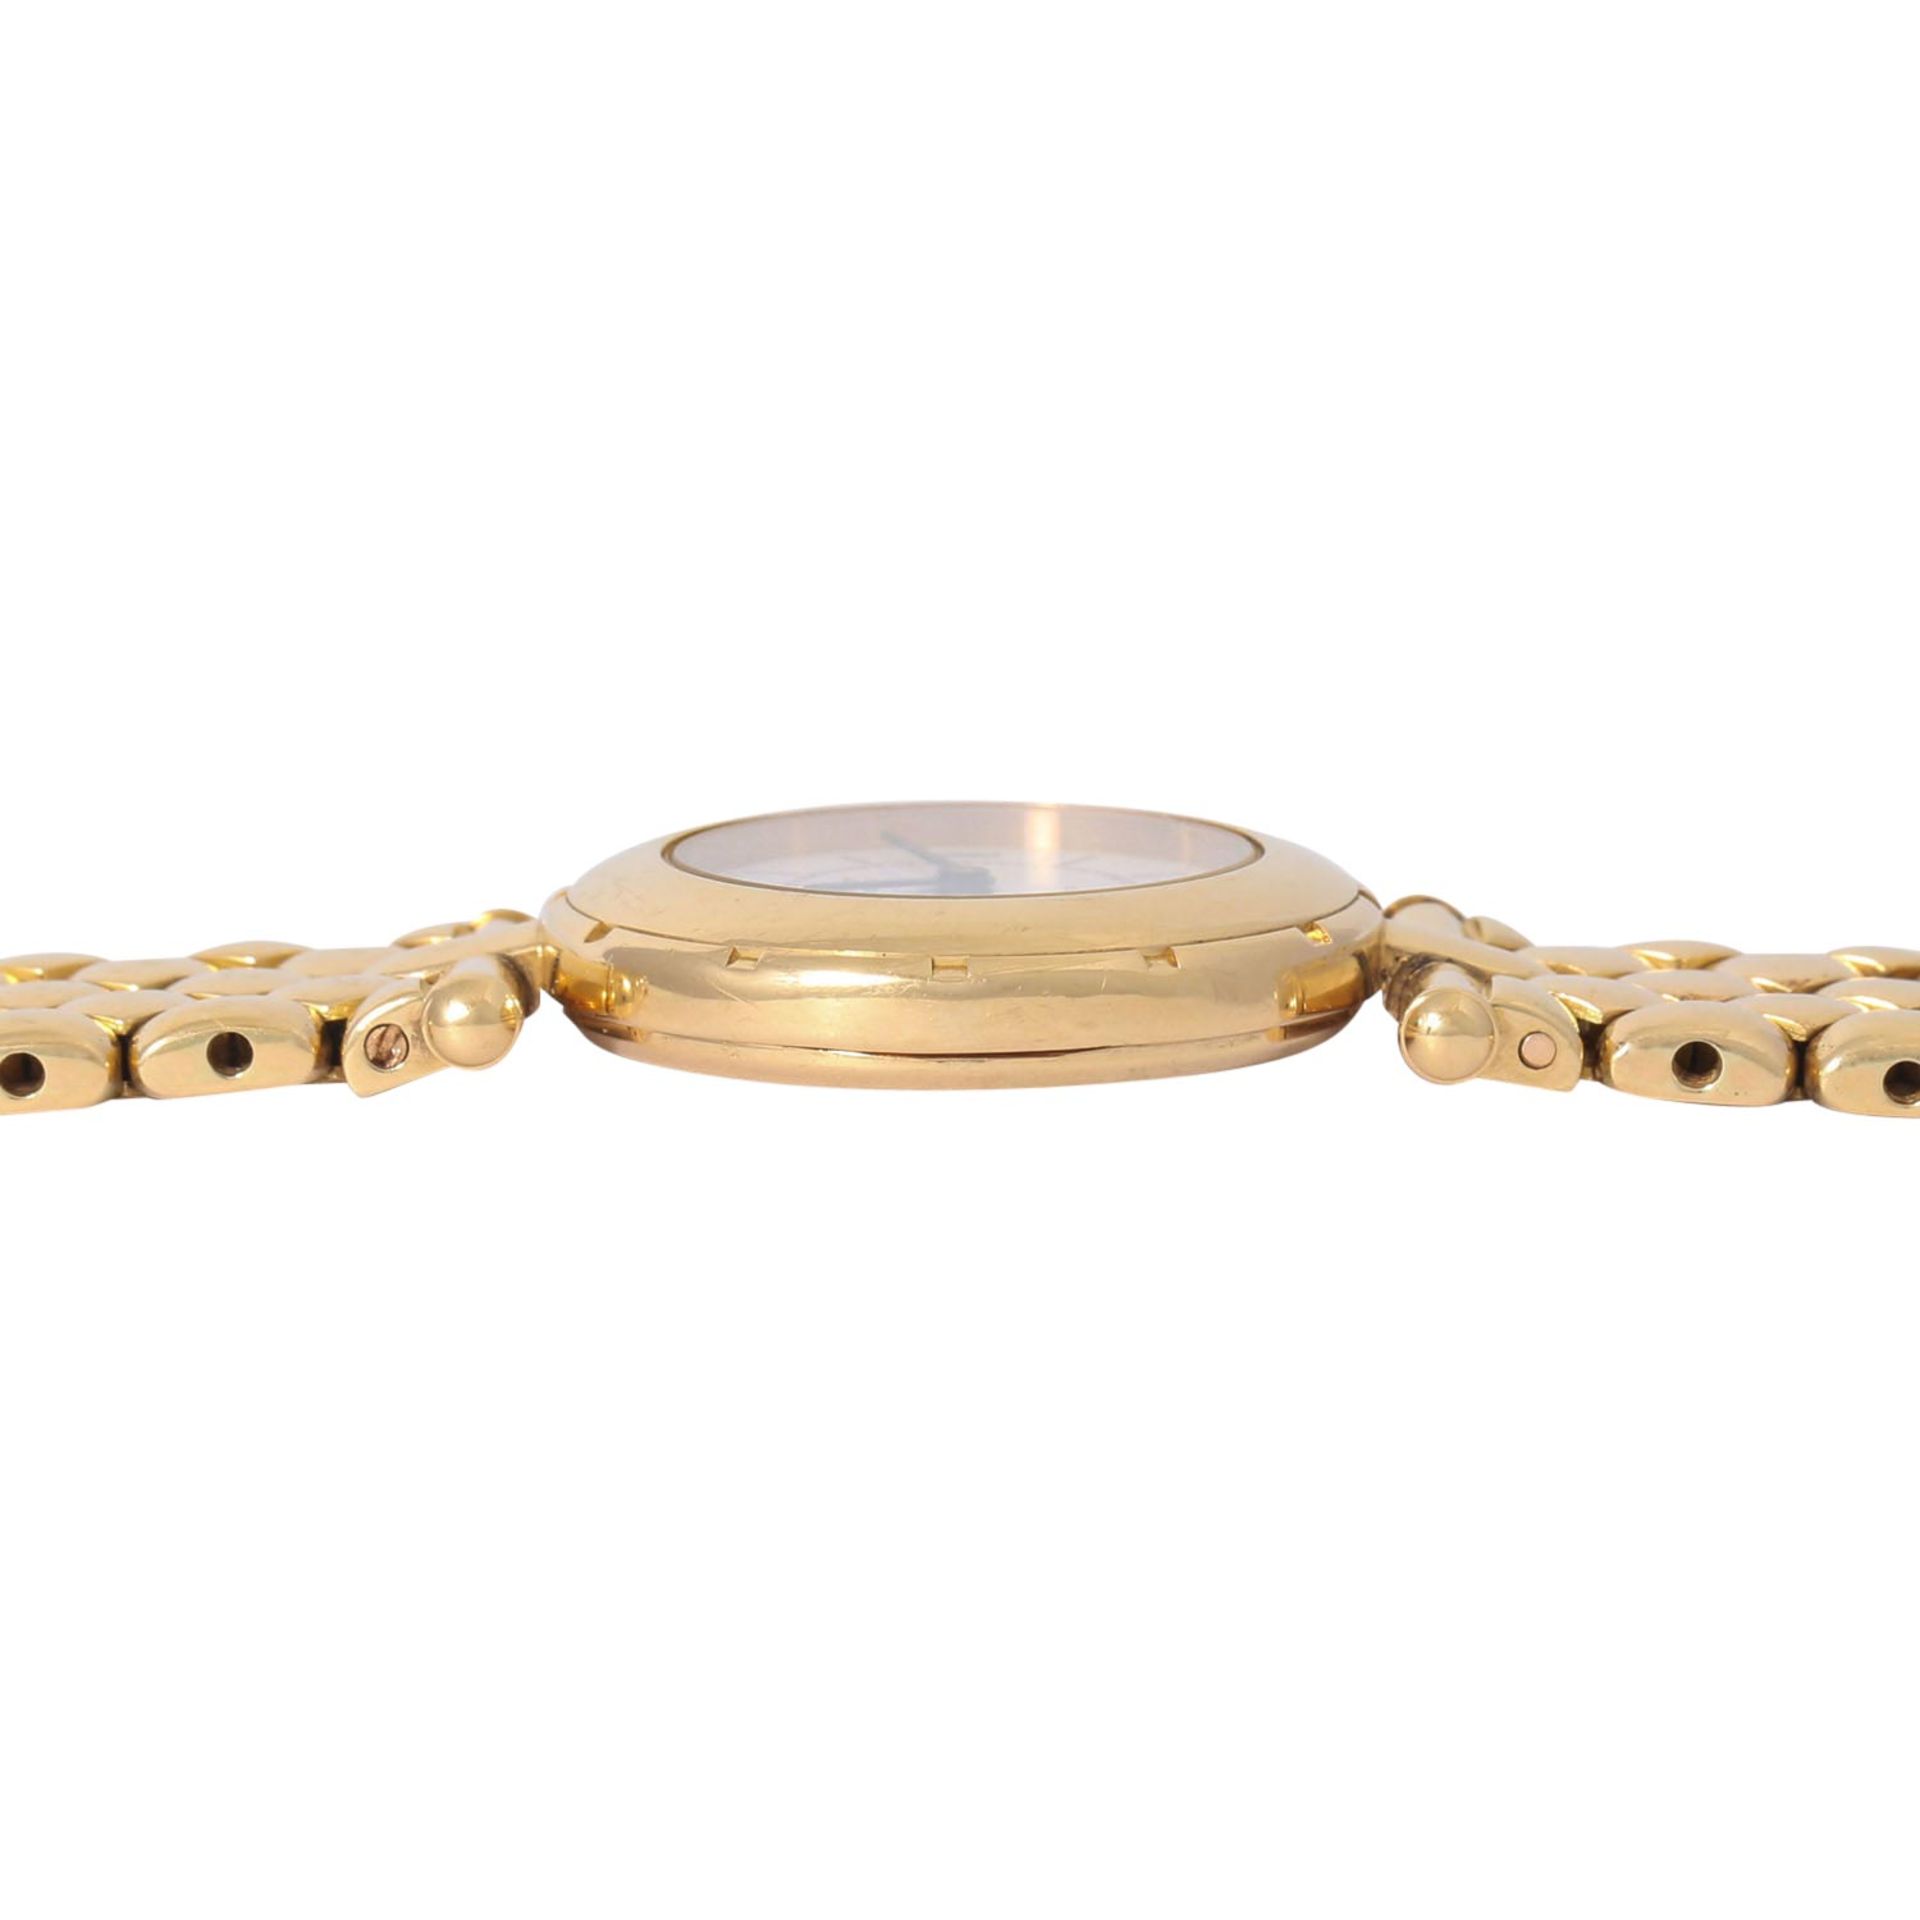 VAN CLEEF & ARPELS hochfeine Damen Armbanduhr, Ref. 13607. Ca. 1990er Jahre. - Image 4 of 8